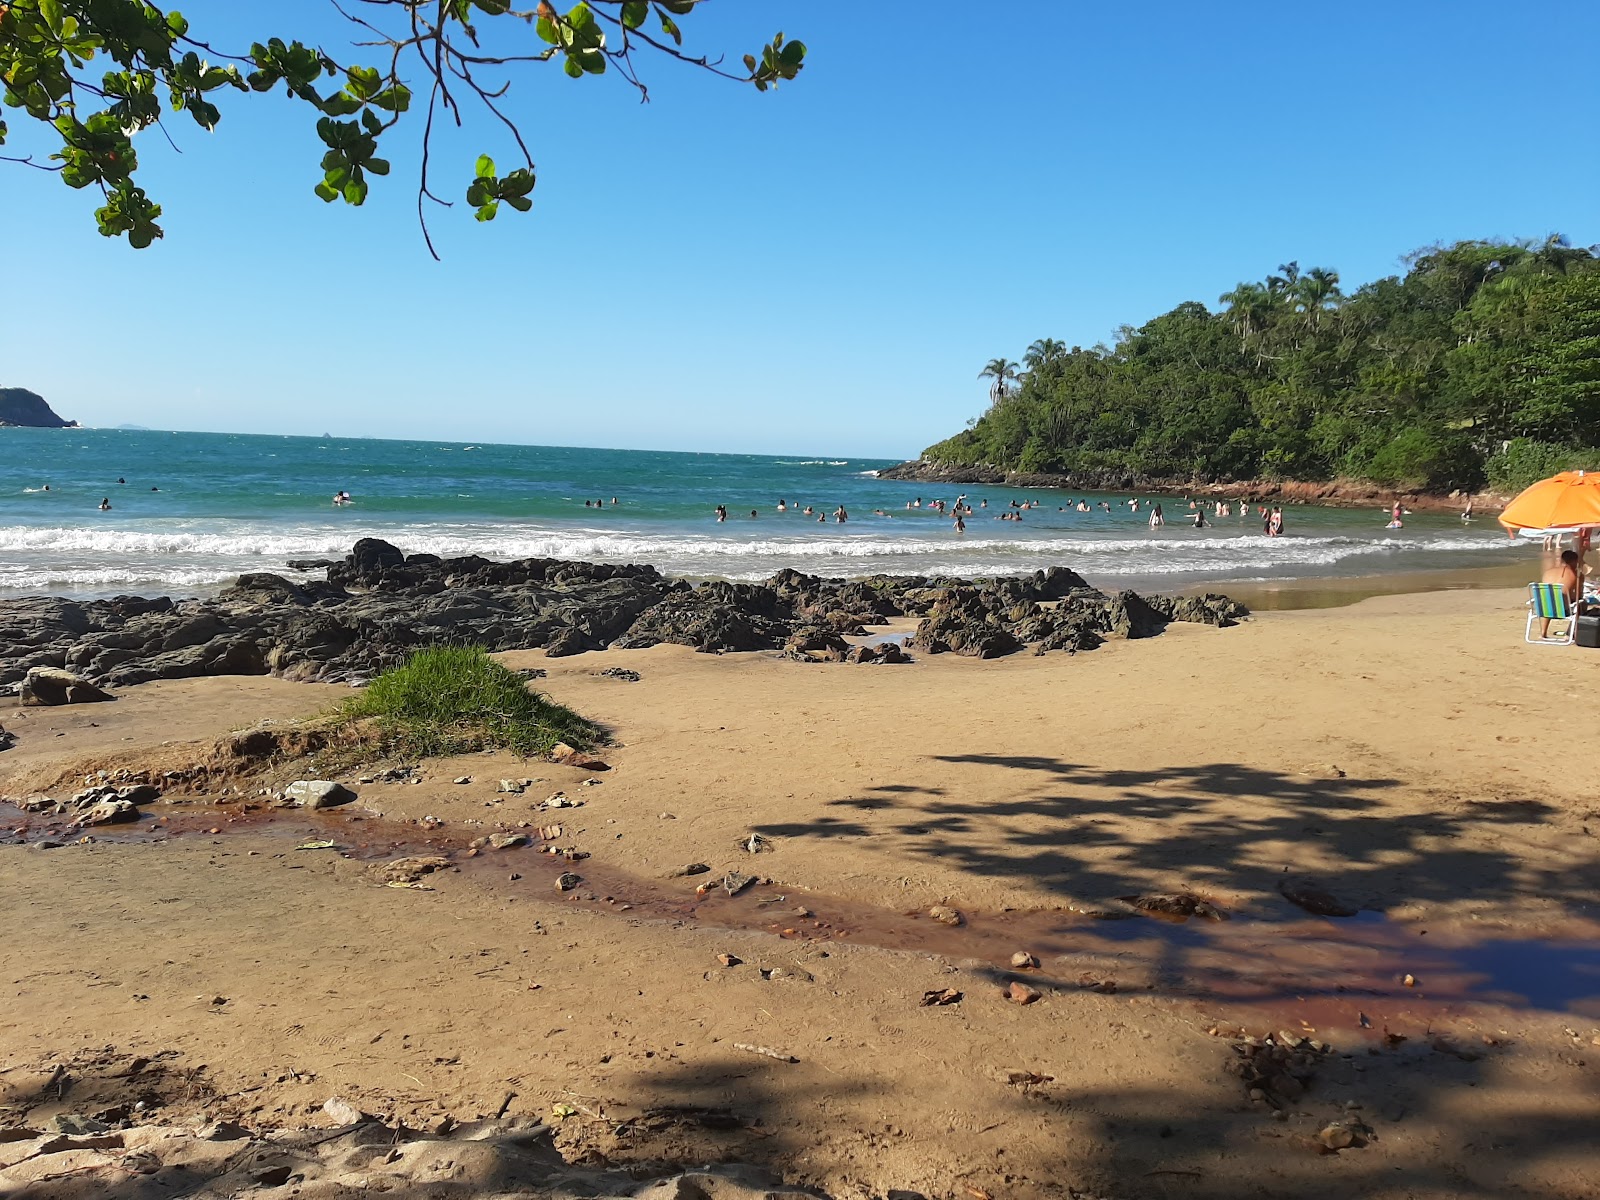 Canto do Poa Plajı'in fotoğrafı geniş plaj ile birlikte